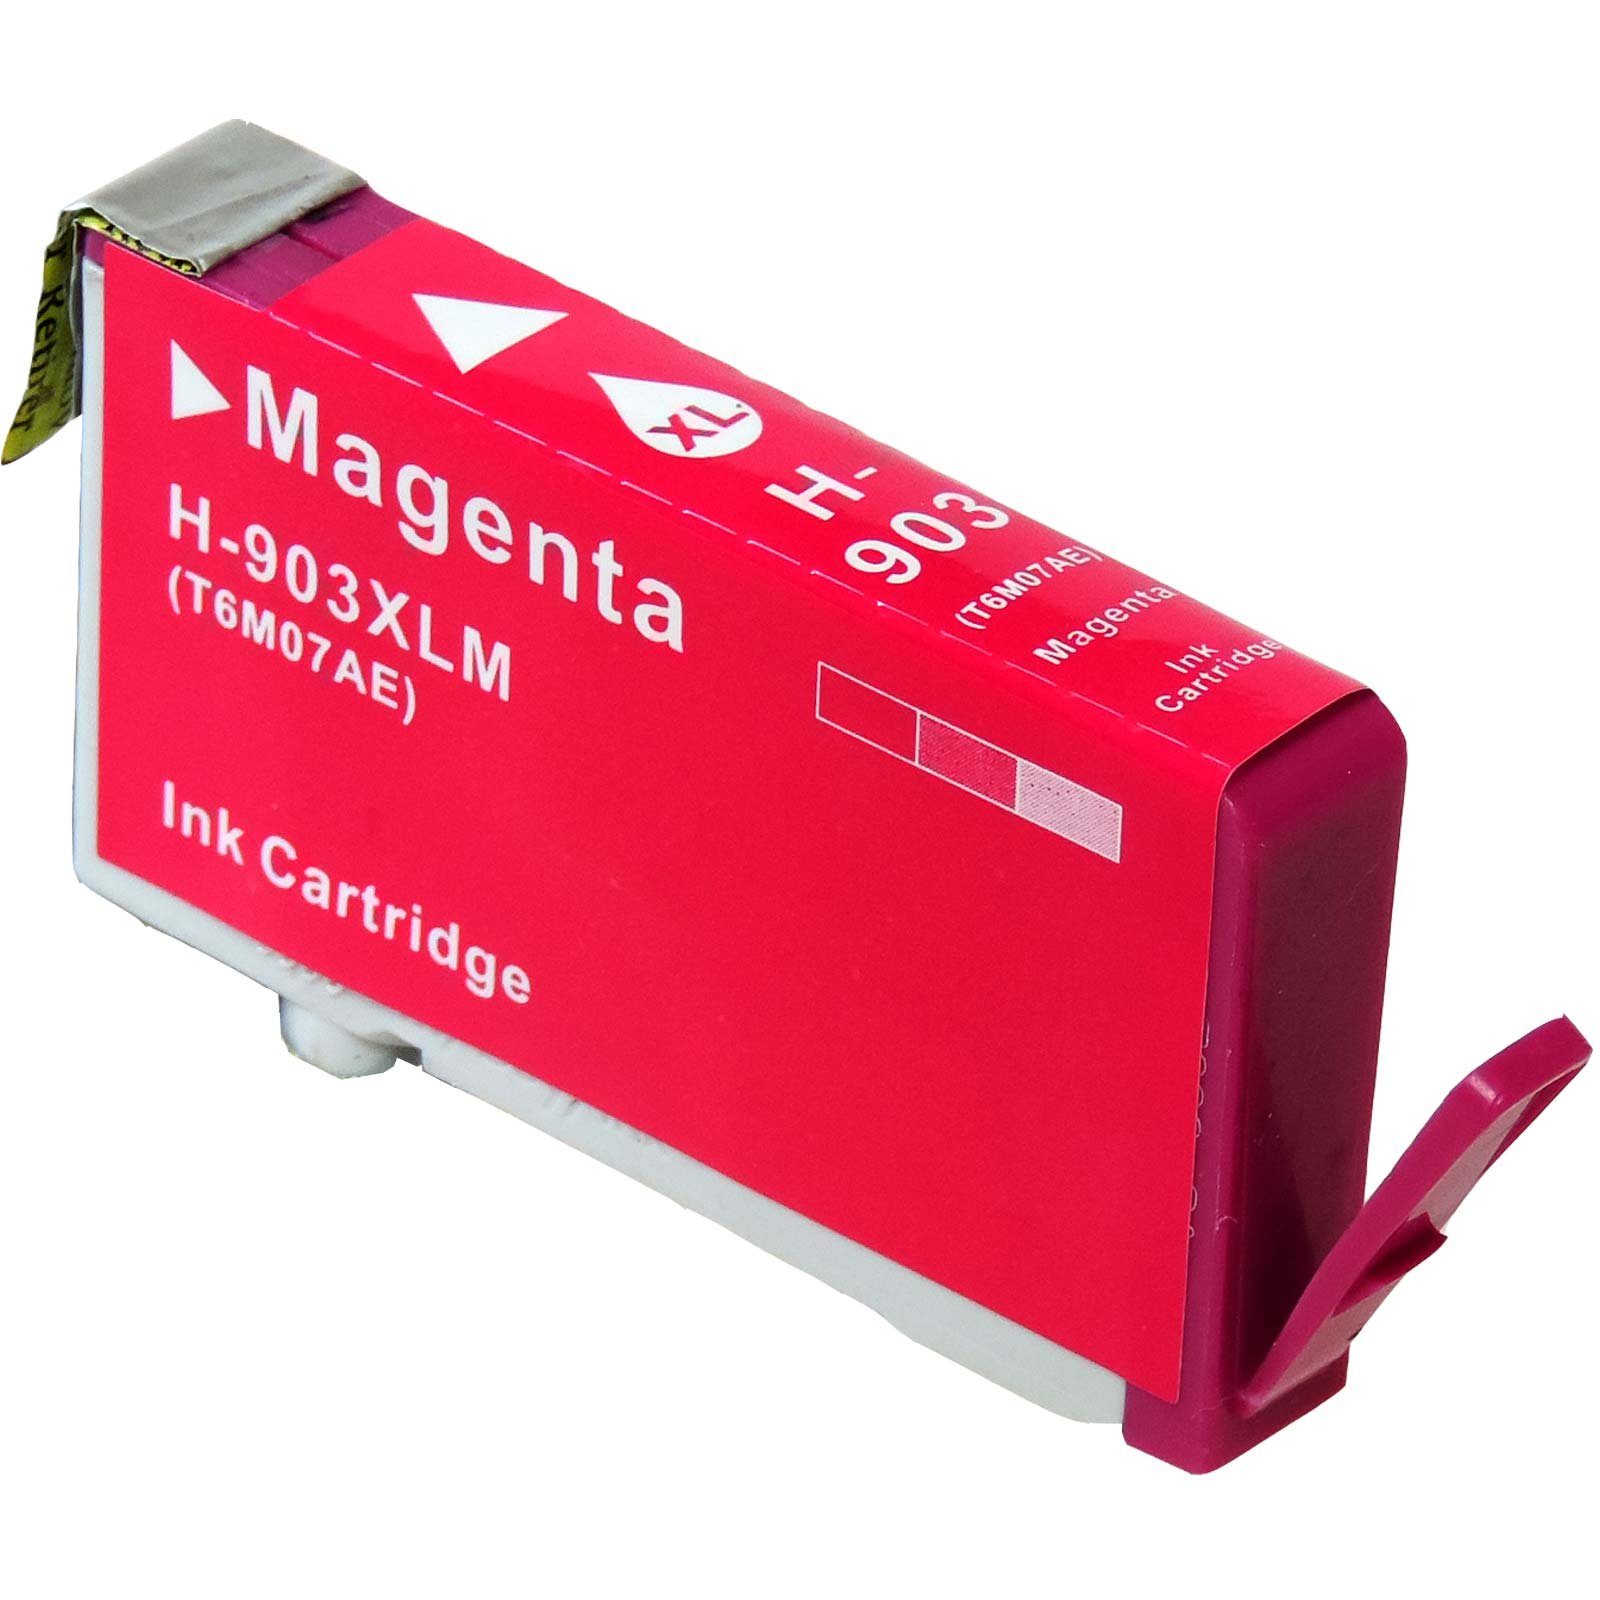 Magenta T6M07AE, Kompatibel HP 903XL D&C Tonerkartusche